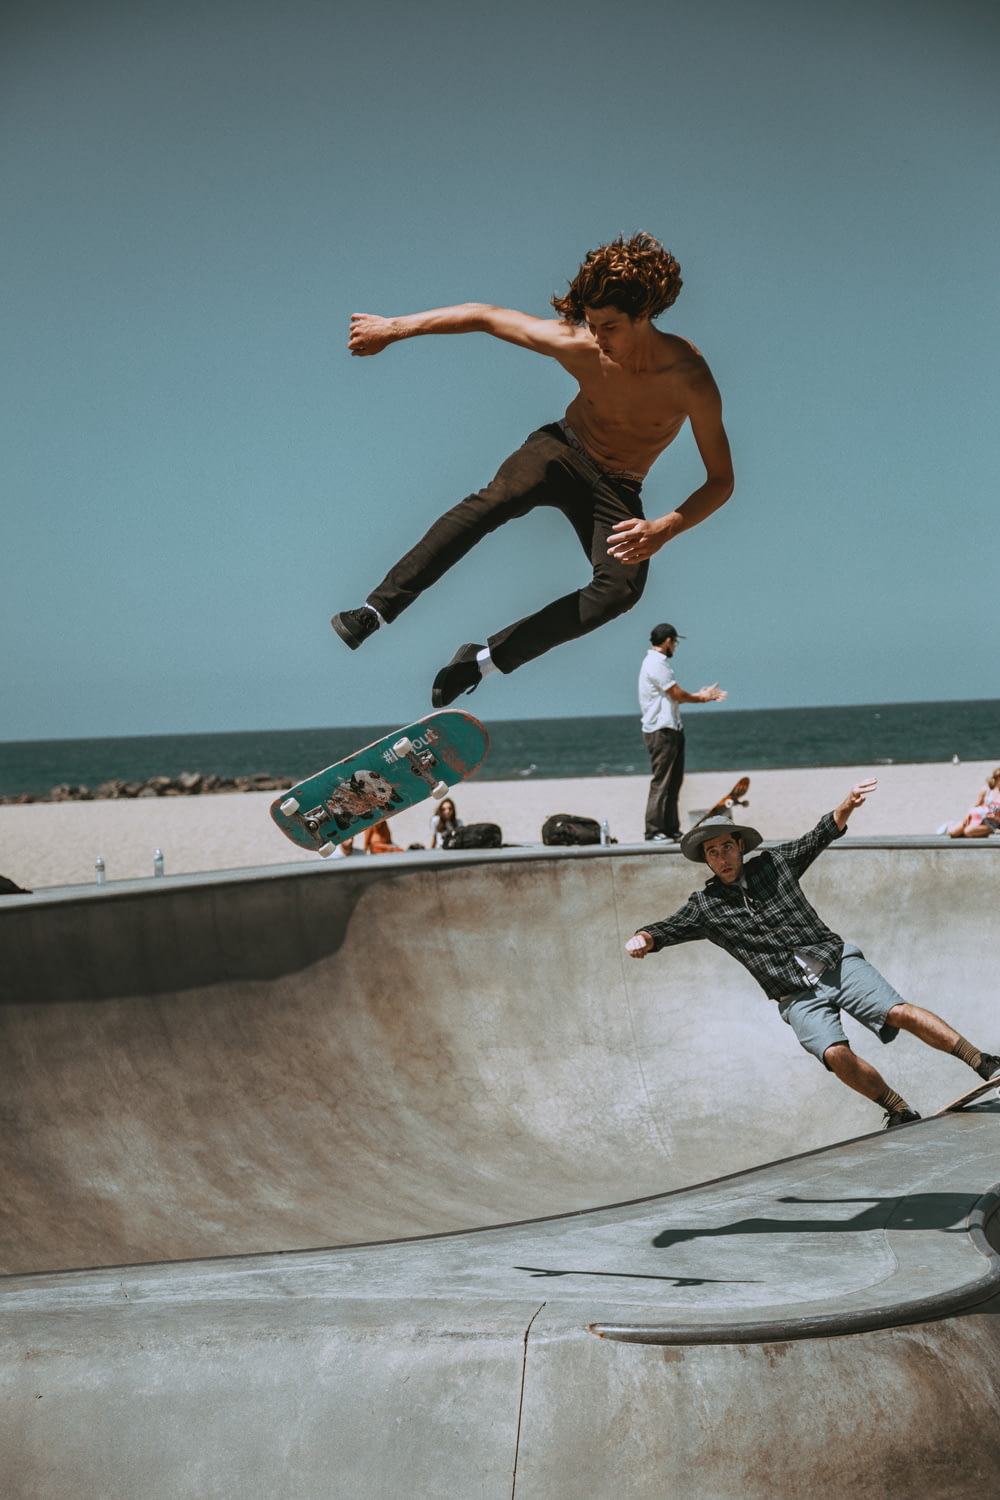 Zwei Männer skateboarden auf einer Bowl-Rampe